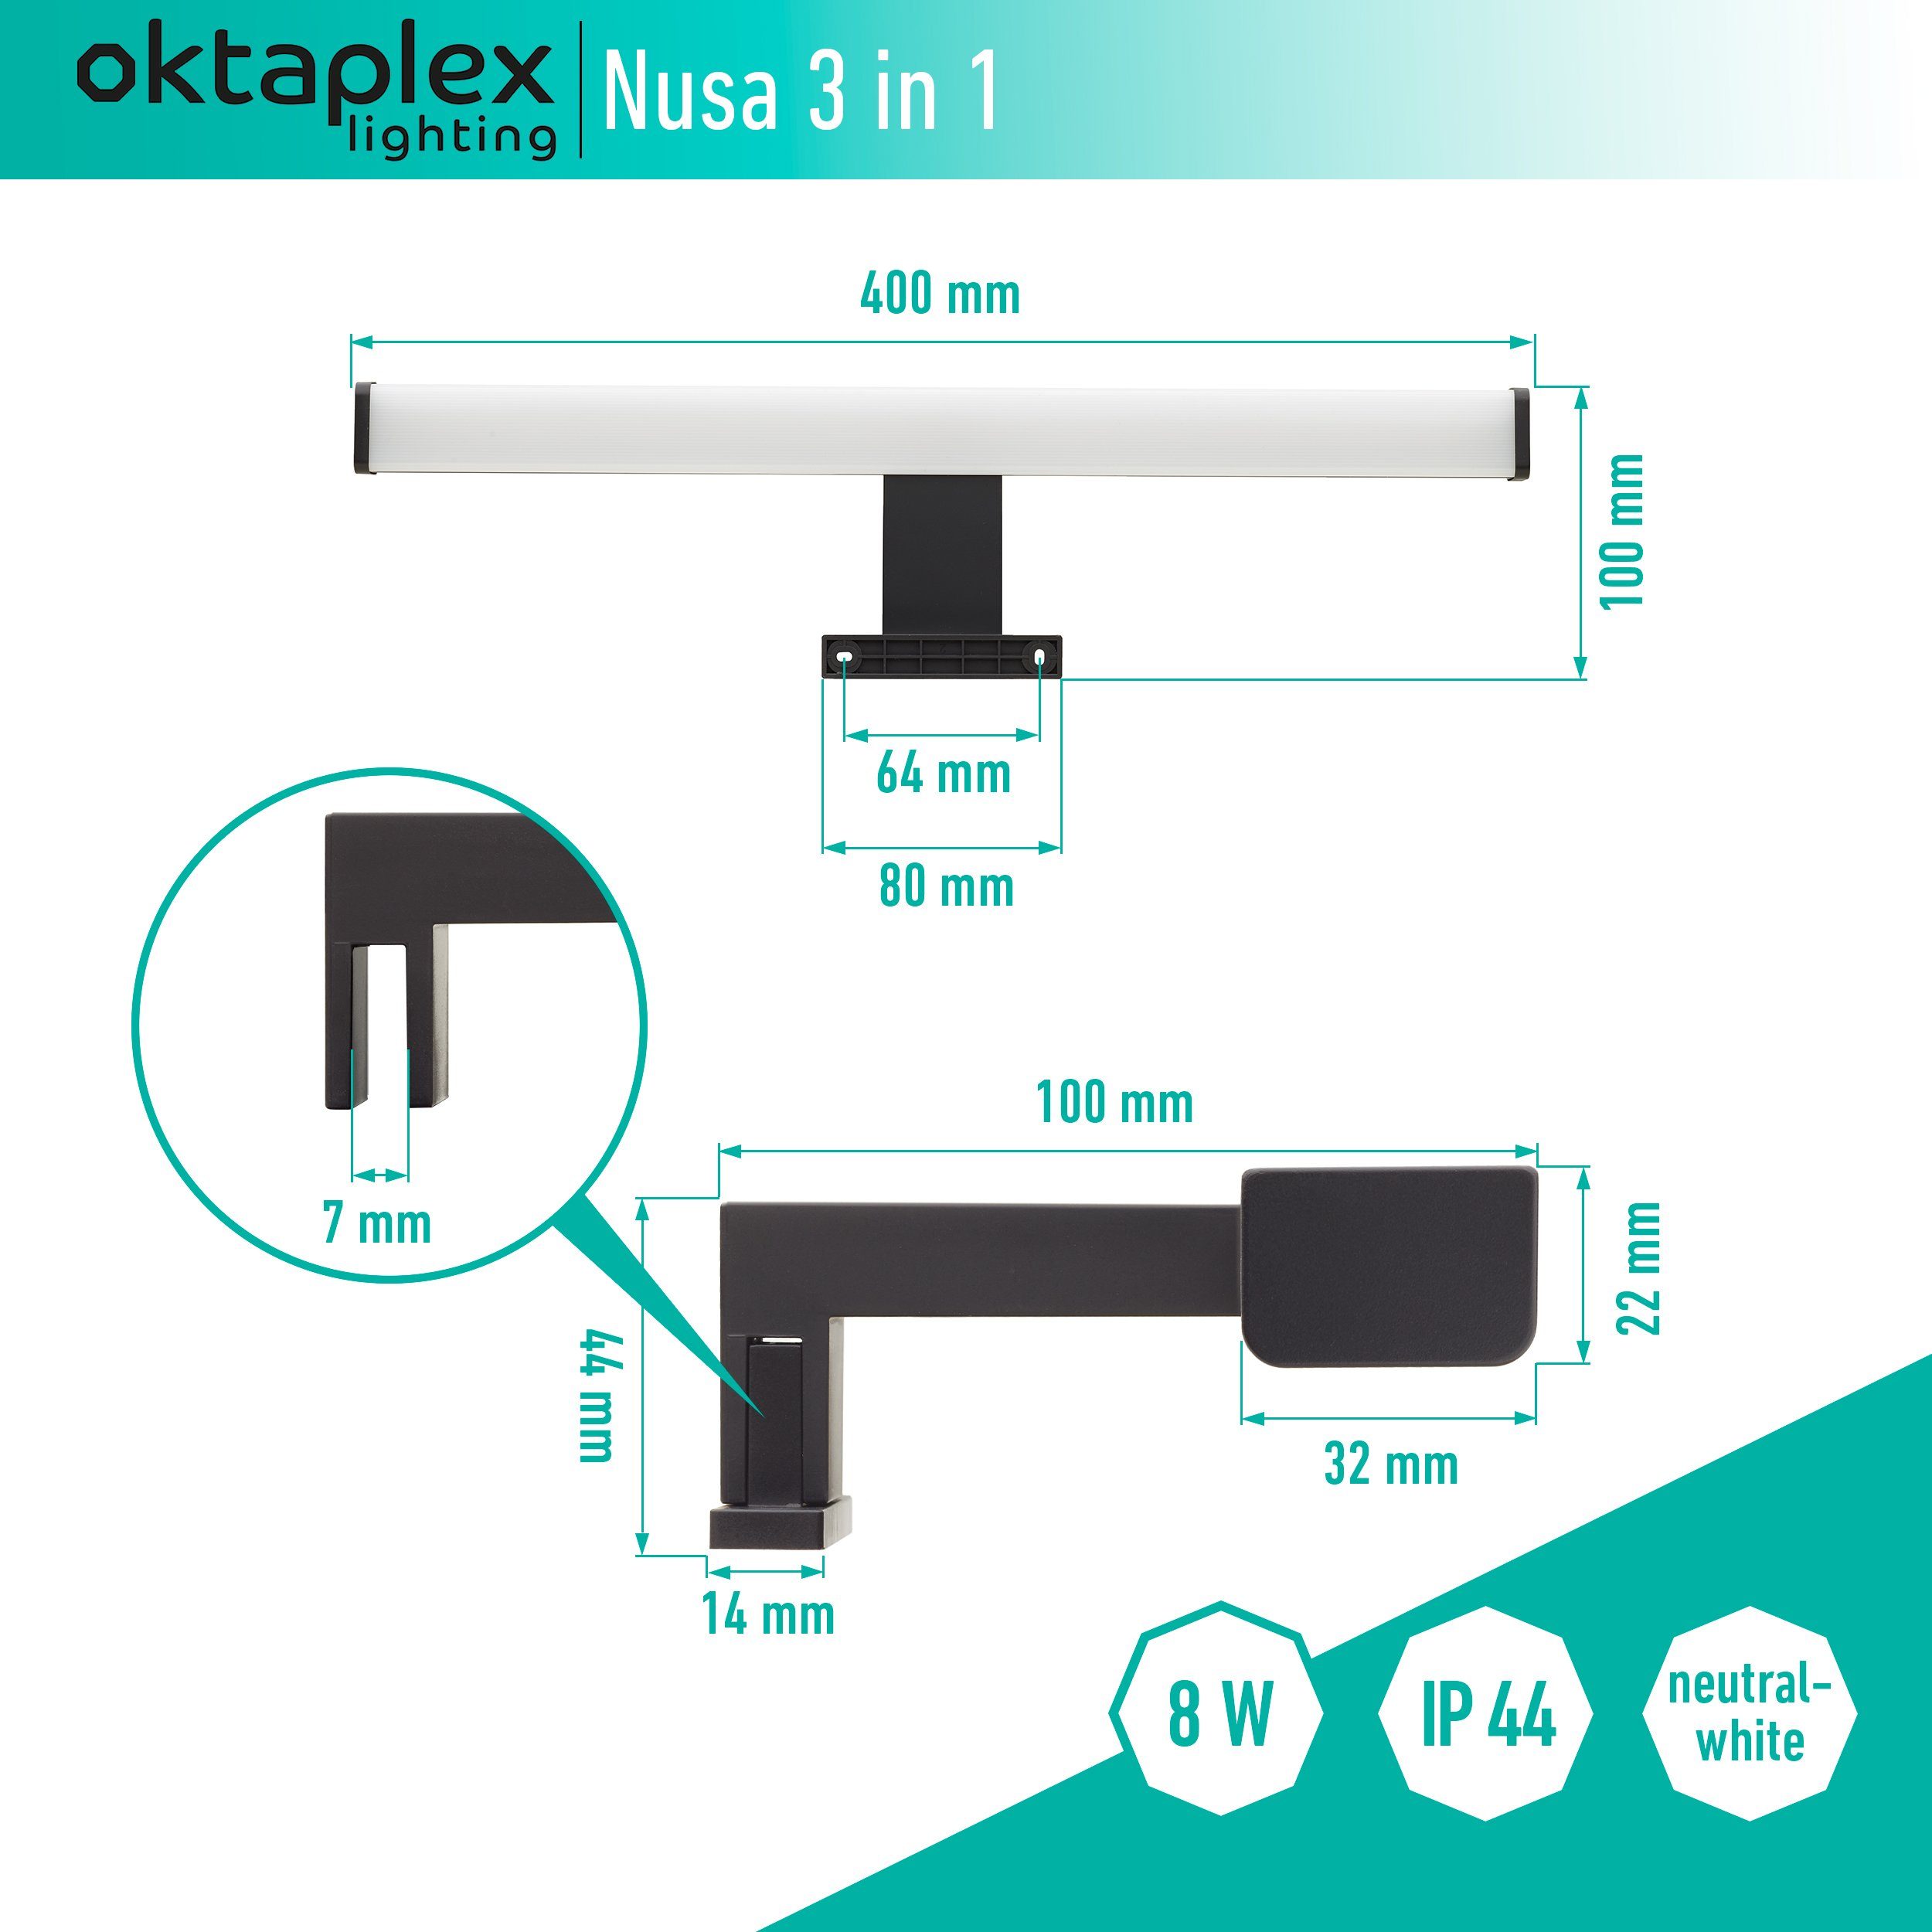 Oktaplex lighting LED Spiegelleuchte Bad Schminklicht 40cm LED 570lm neutralweiß fest 8W, schwarz, 4000K, in Spiegellampe IP44 Nusa 3 verbaut, 1